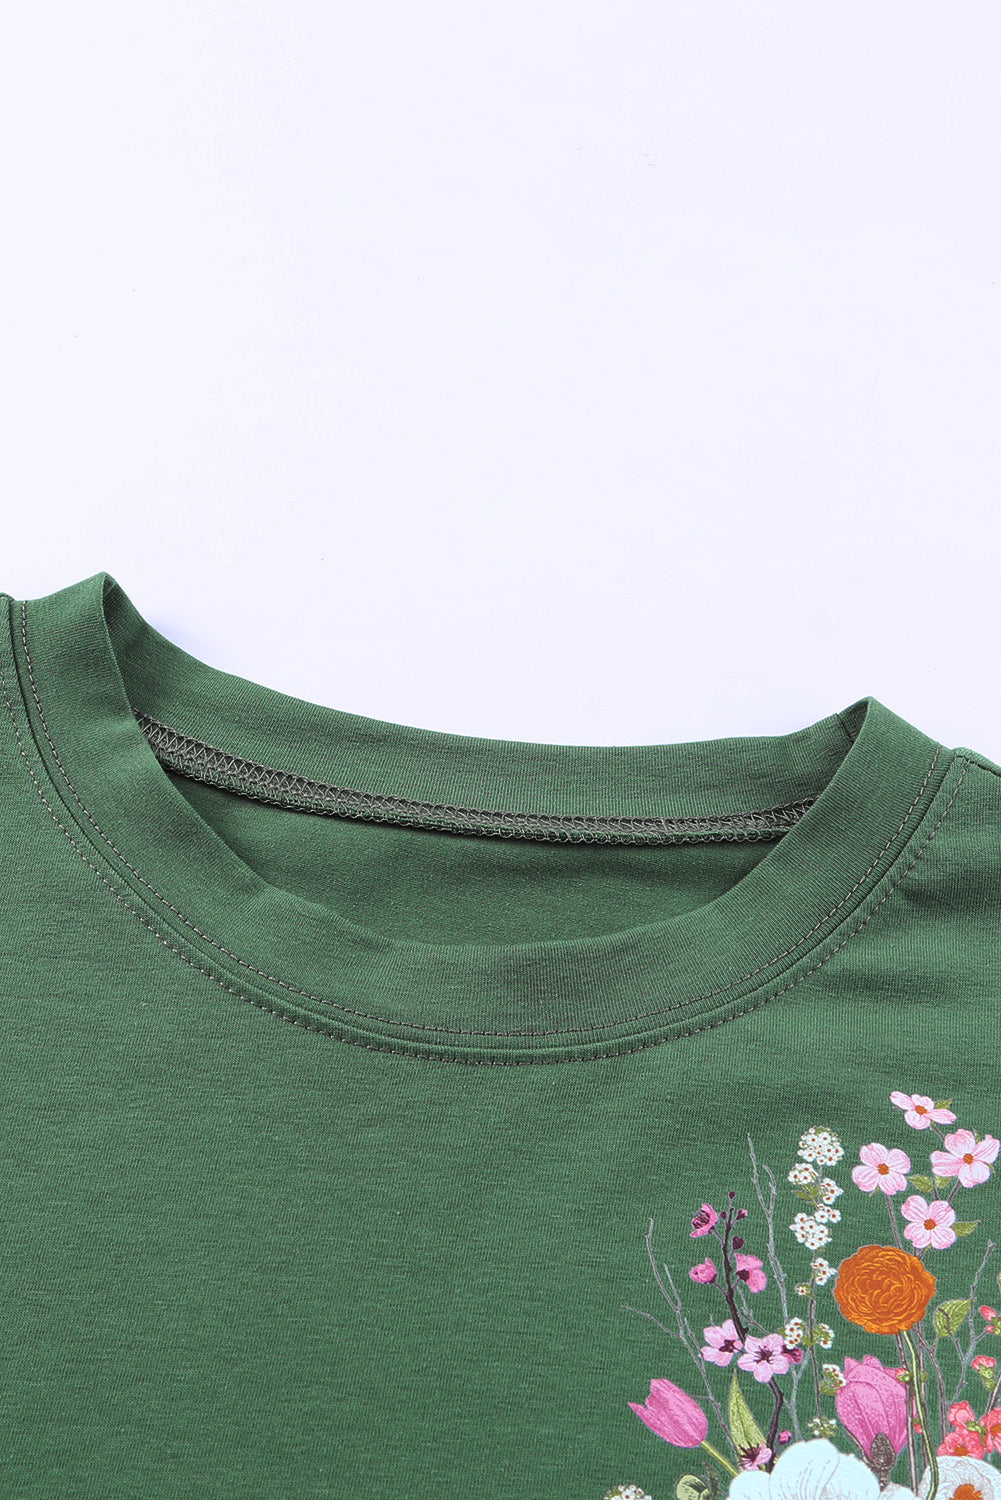 Grünes, lässiges Kurzarm-T-Shirt mit Blumentasche und Tasche